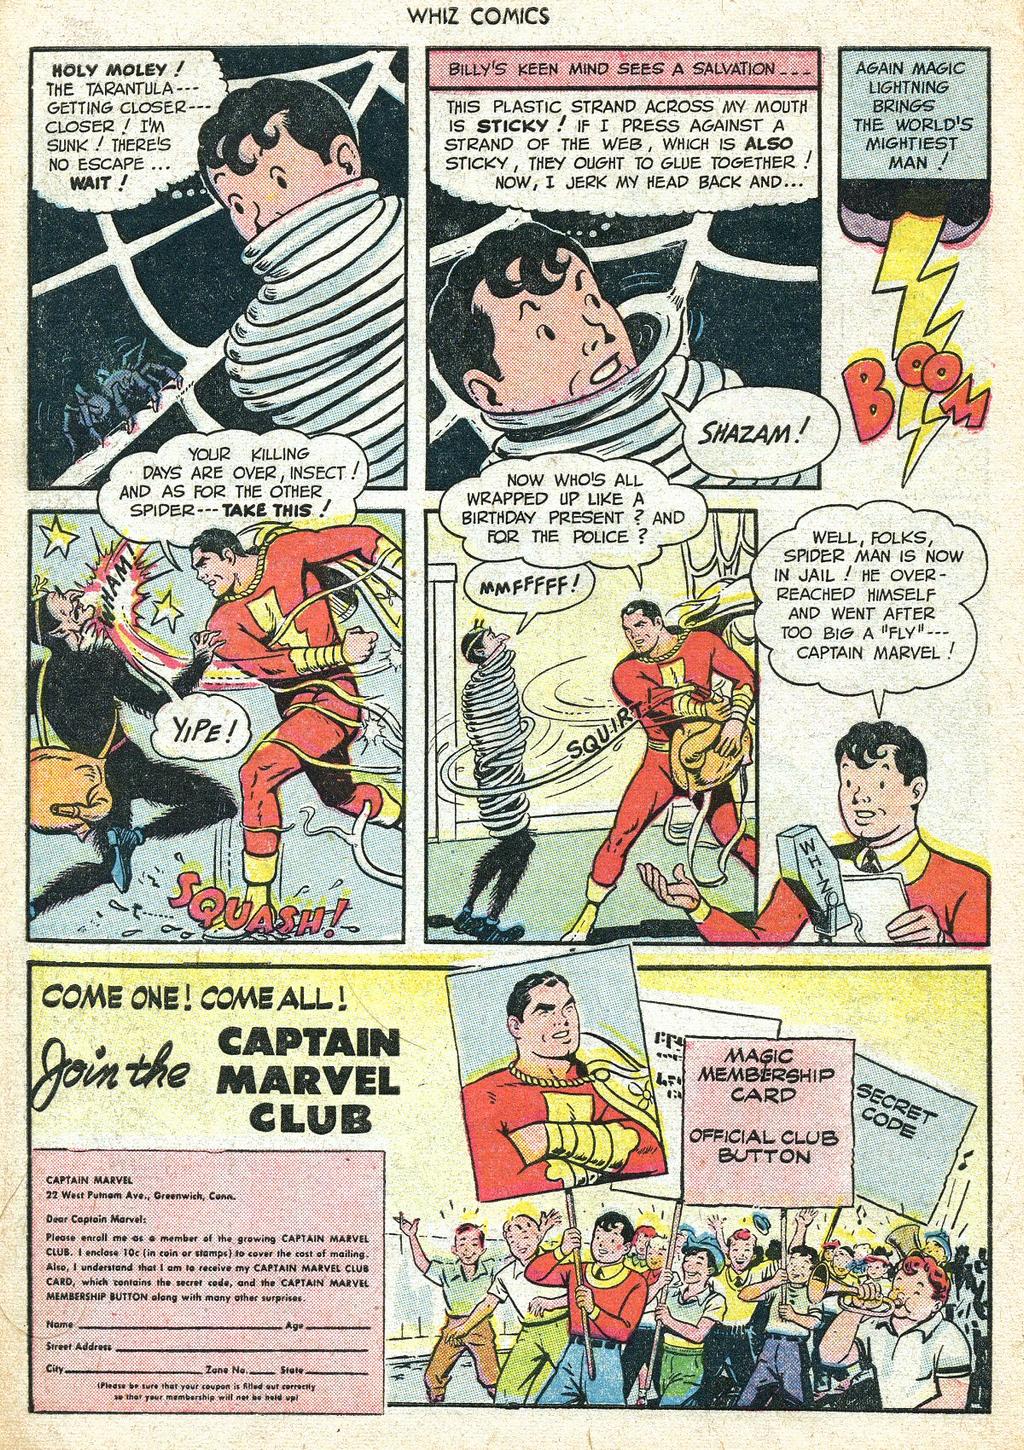 O Homem Aranha original enfrenta o Capitão Marvel